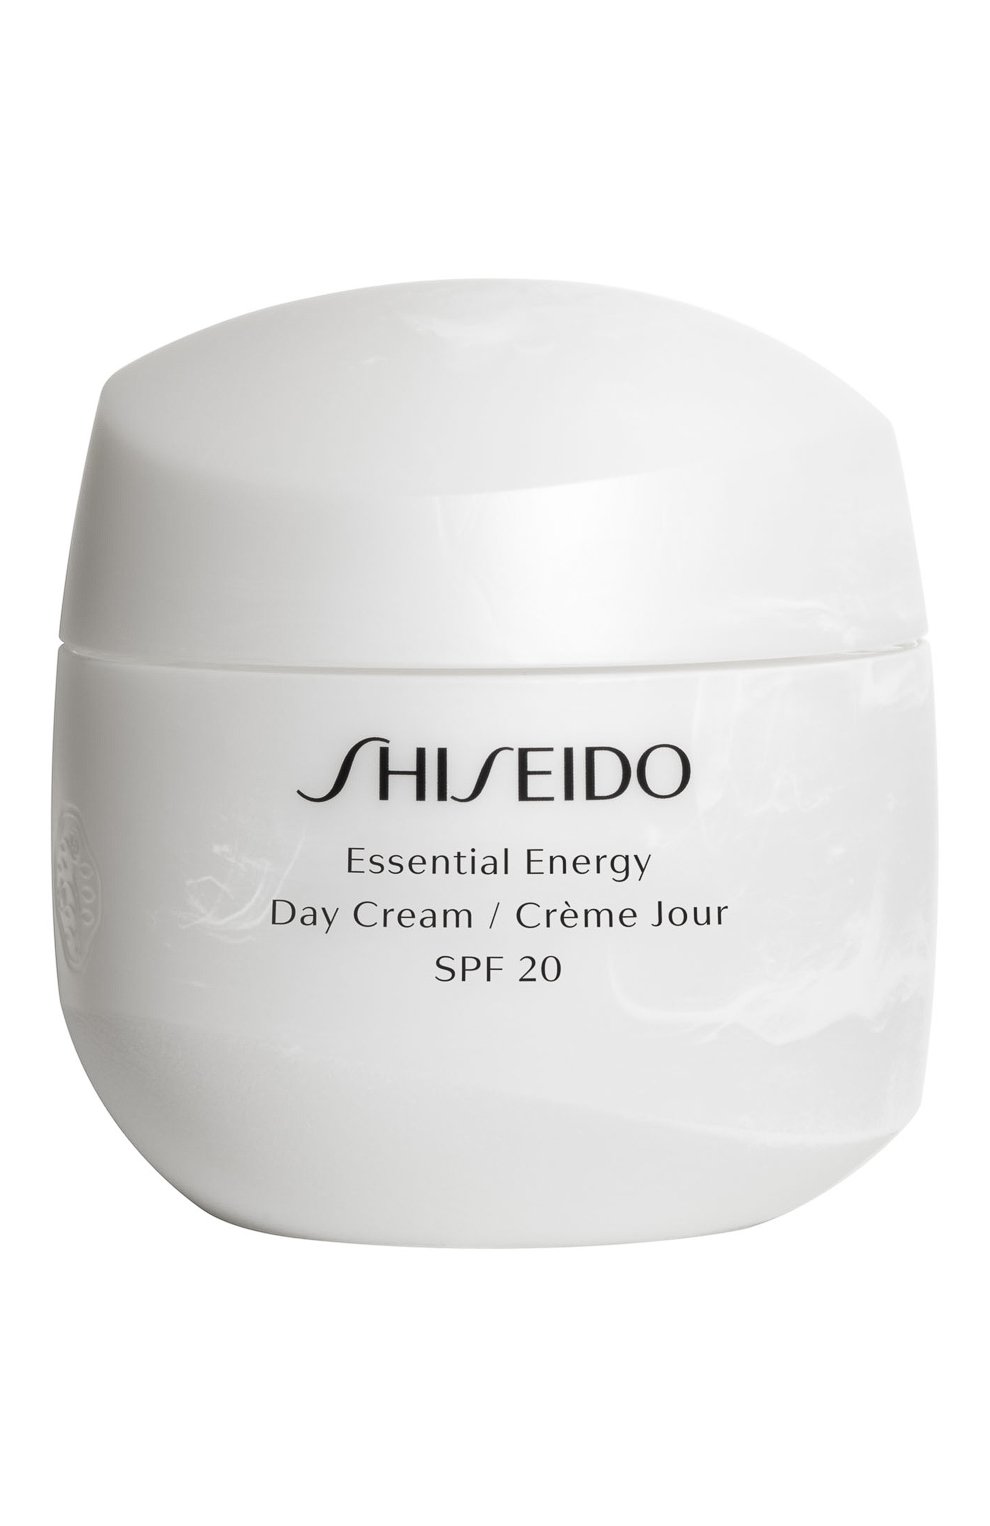 Shiseido energy